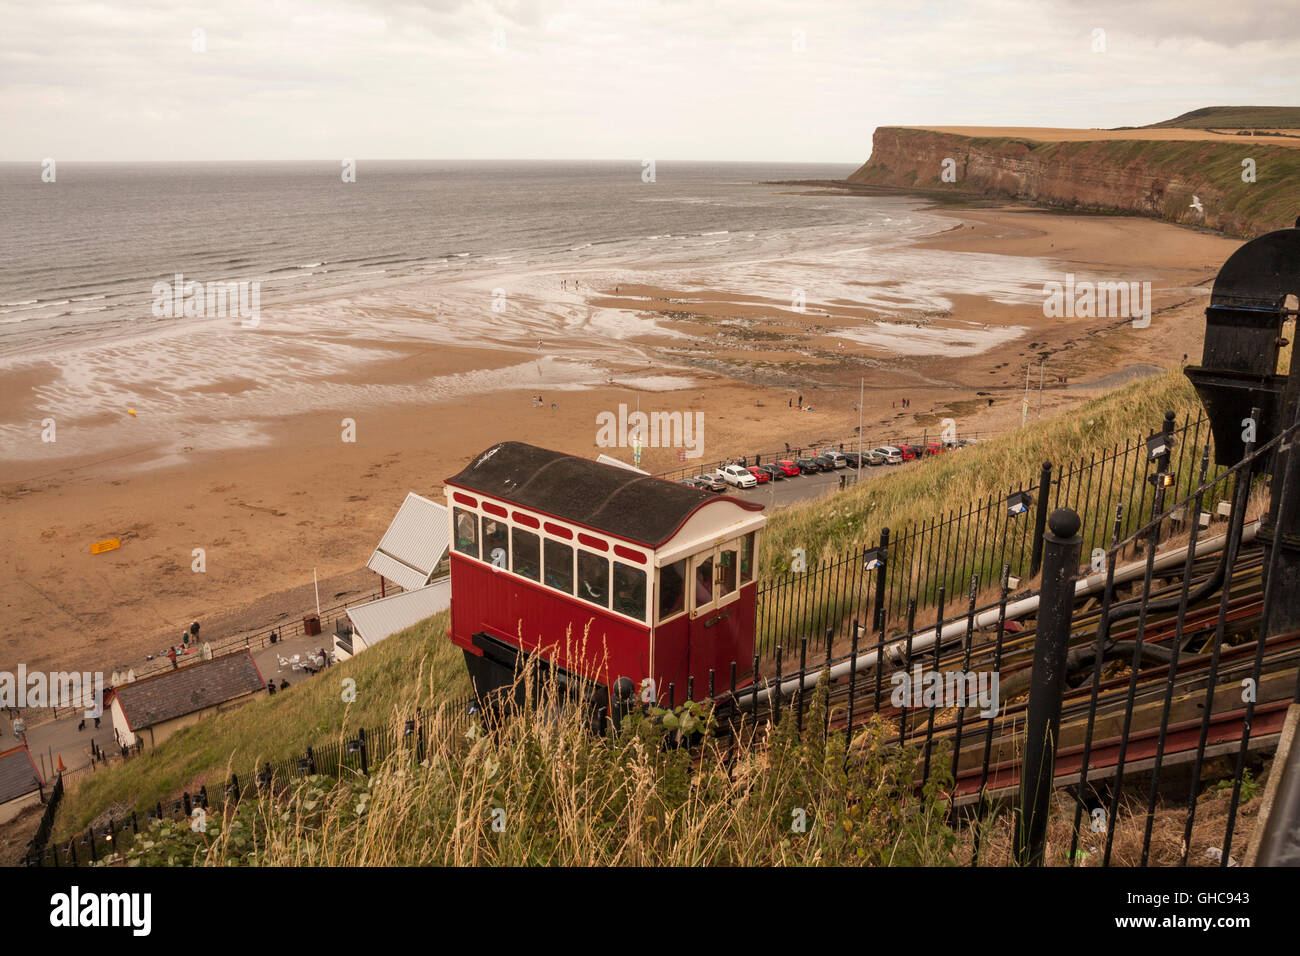 Ein Landschaft Blick auf die malerische Standseilbahn Schiene heben Sie von der Klippe zum Strand von Saltburn am Meer, England, UK Stockfoto